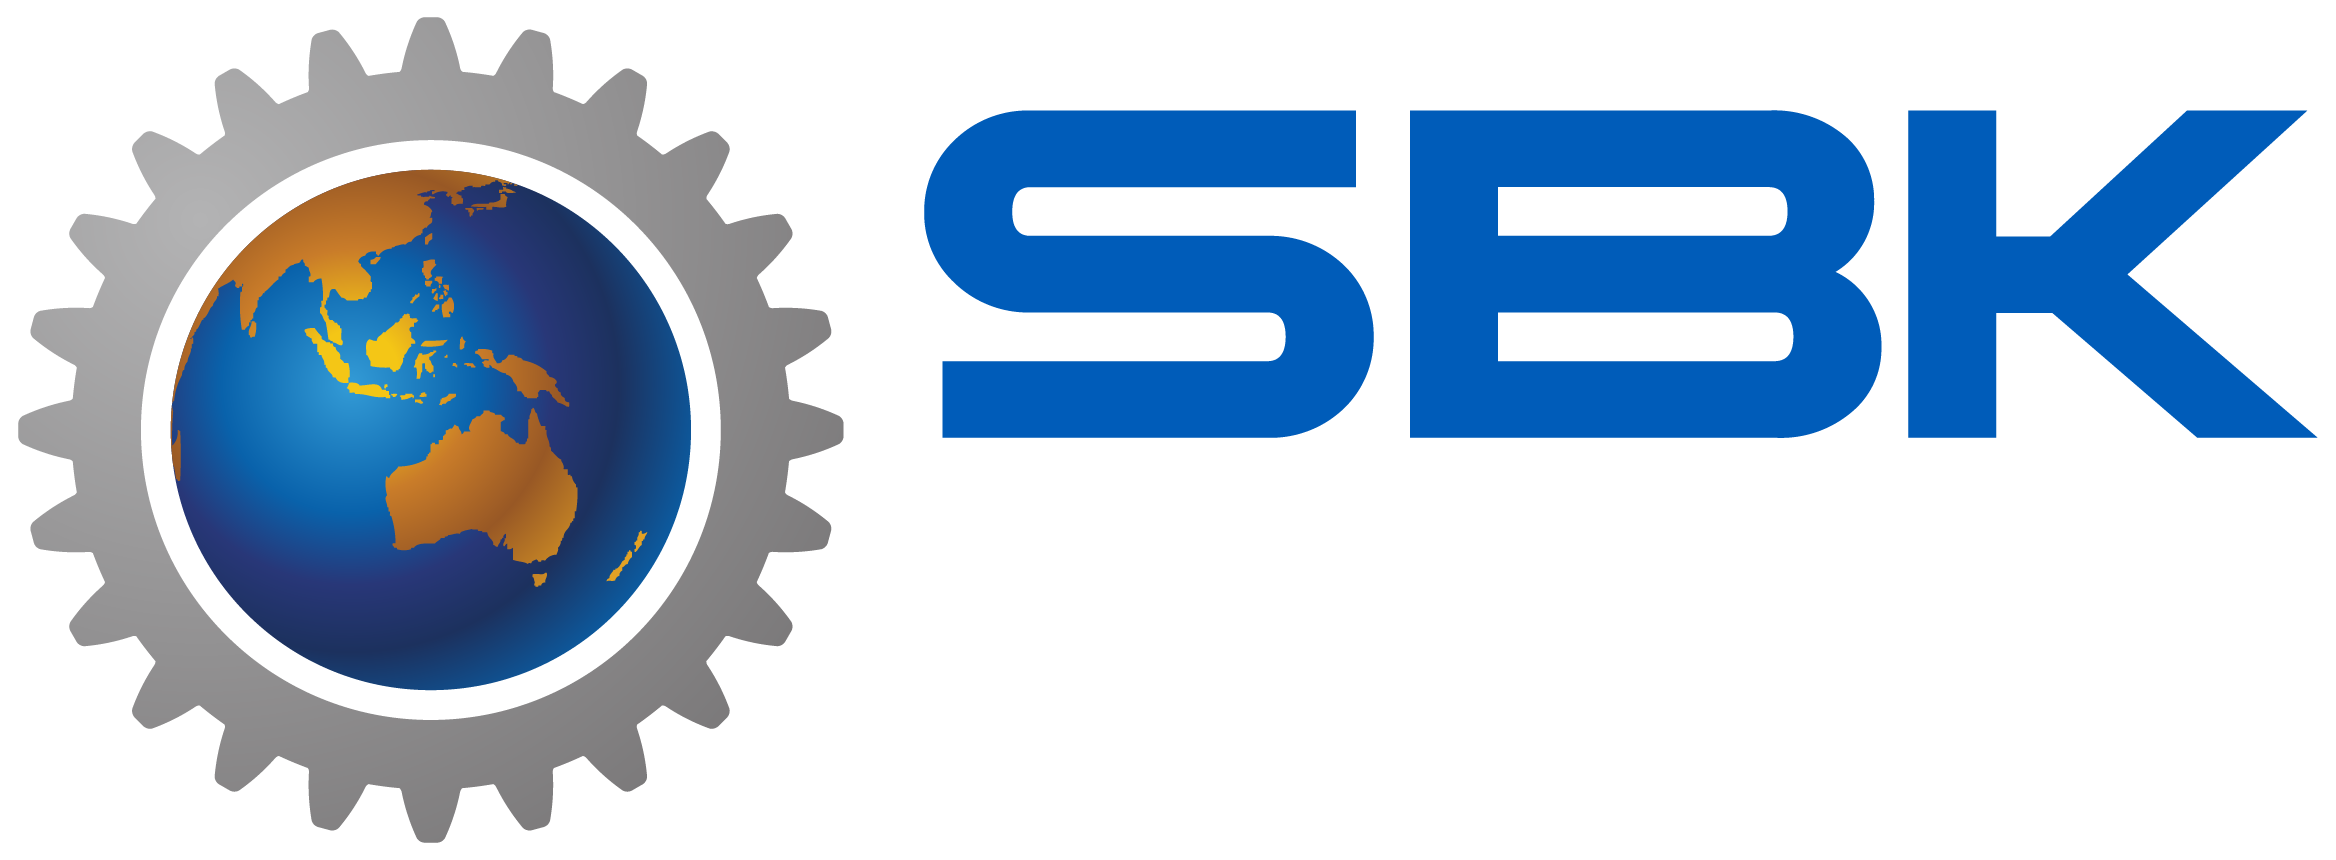 sbk-solutions-logo